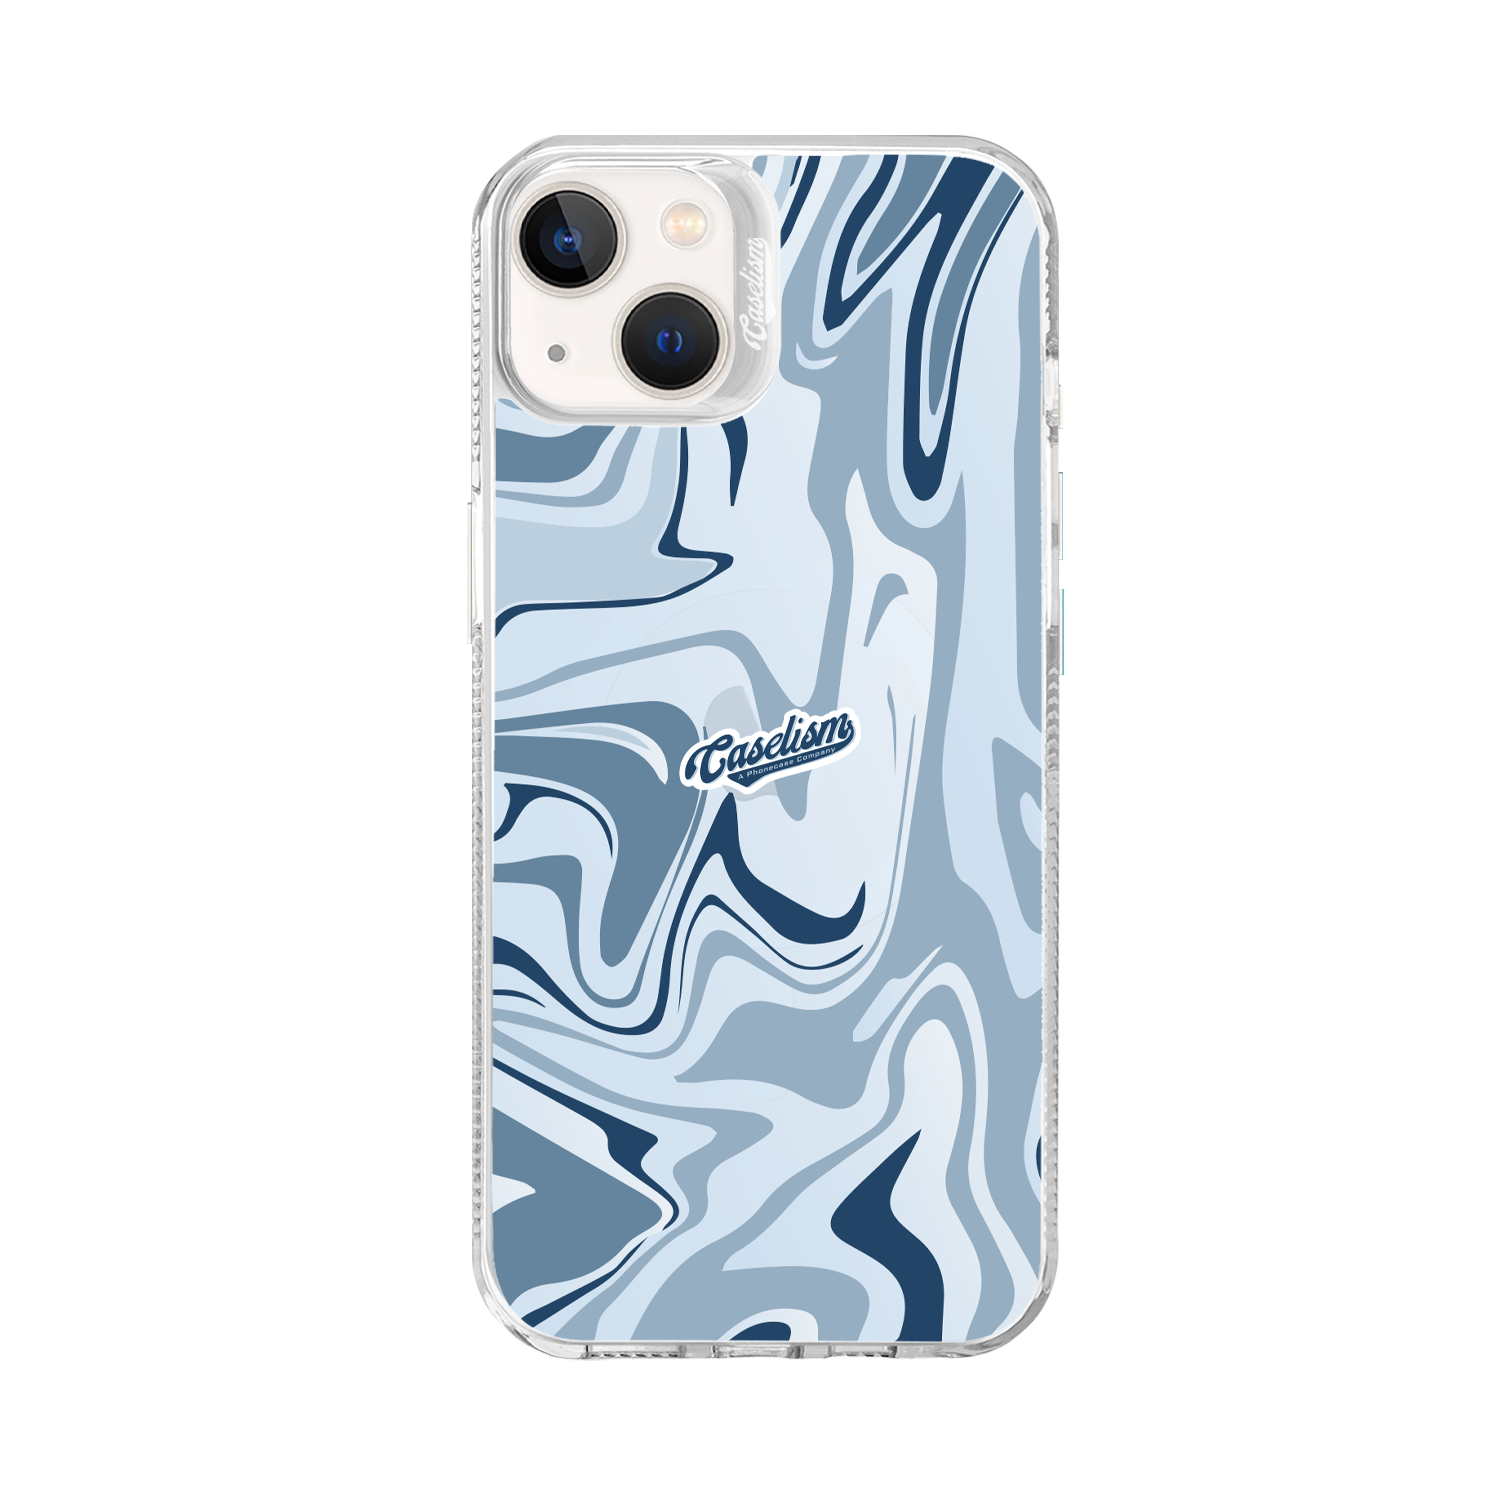 CASE010 - ColorLite Case for iPhone